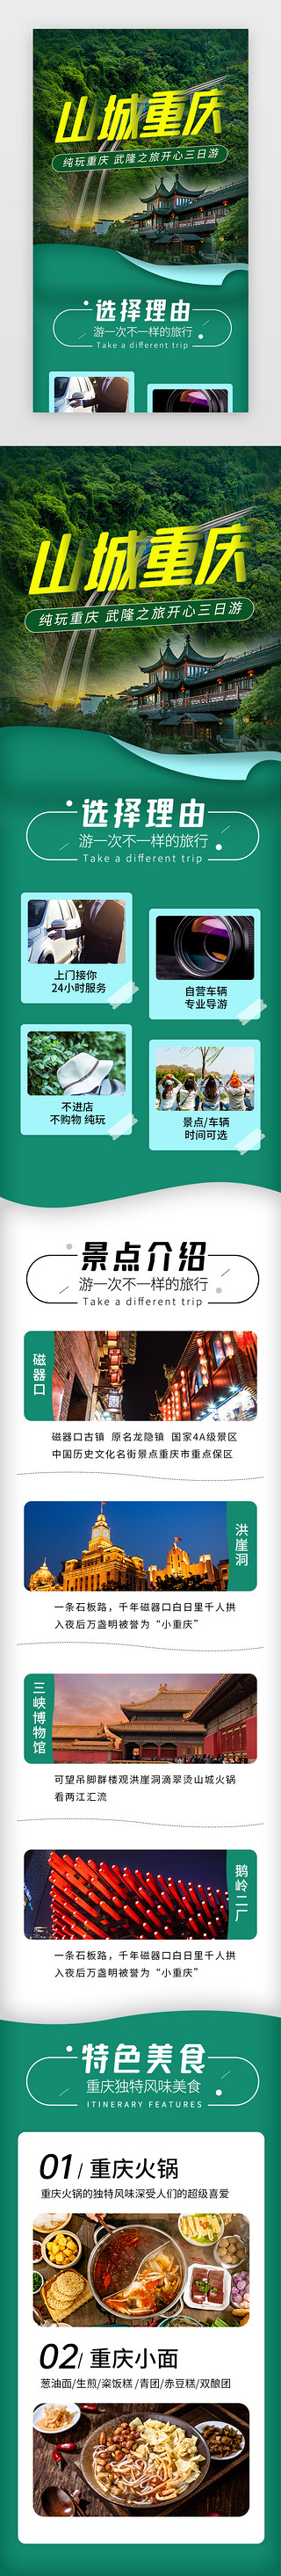 简历介绍UI设计素材_山城重庆旅游景点介绍H5长图